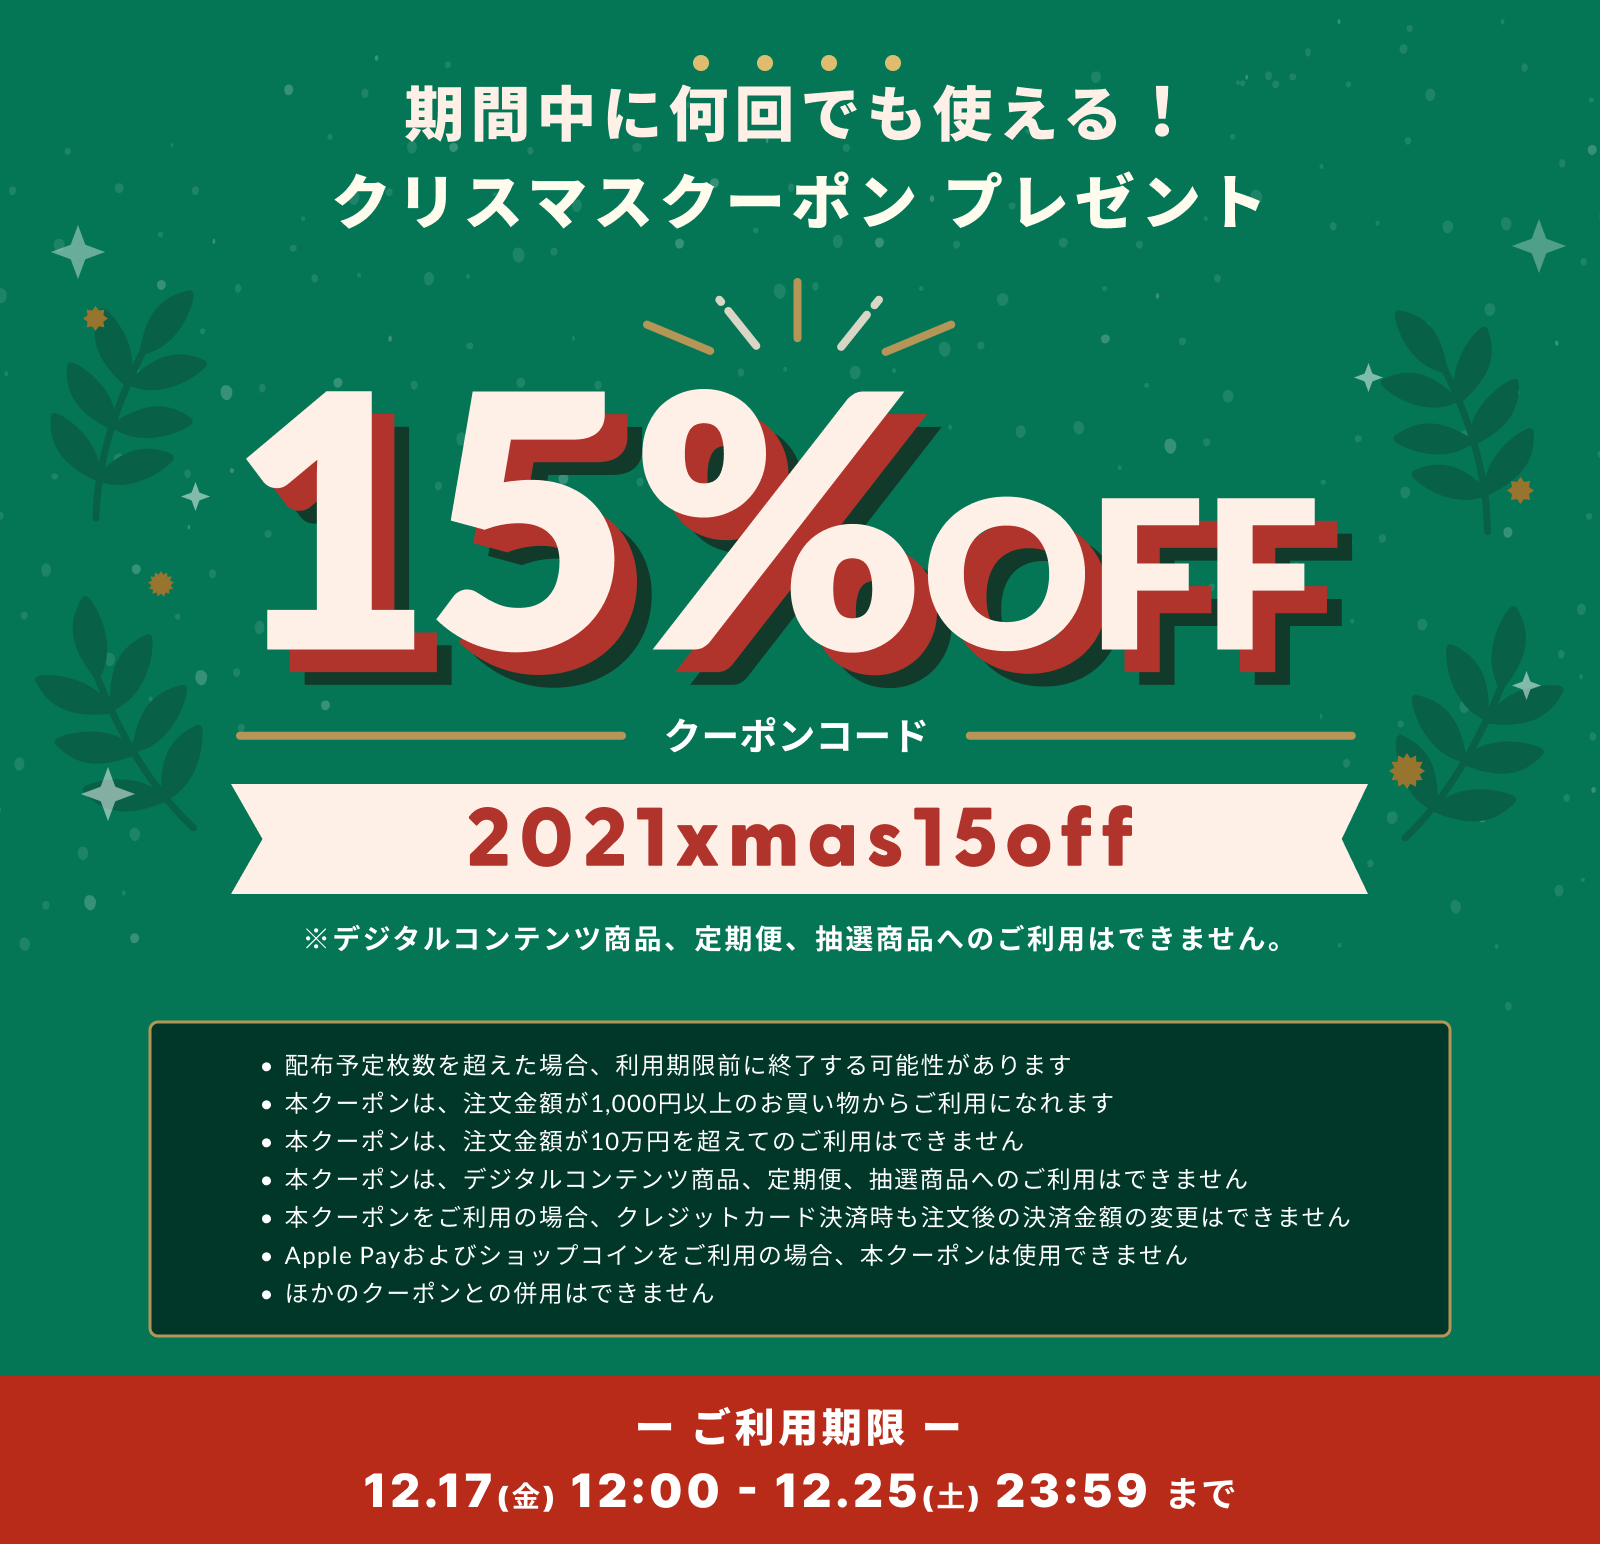 【期間限定】全品 15%OFF クリスマスクーポンプレゼント！ クーポン：2021xmas15off